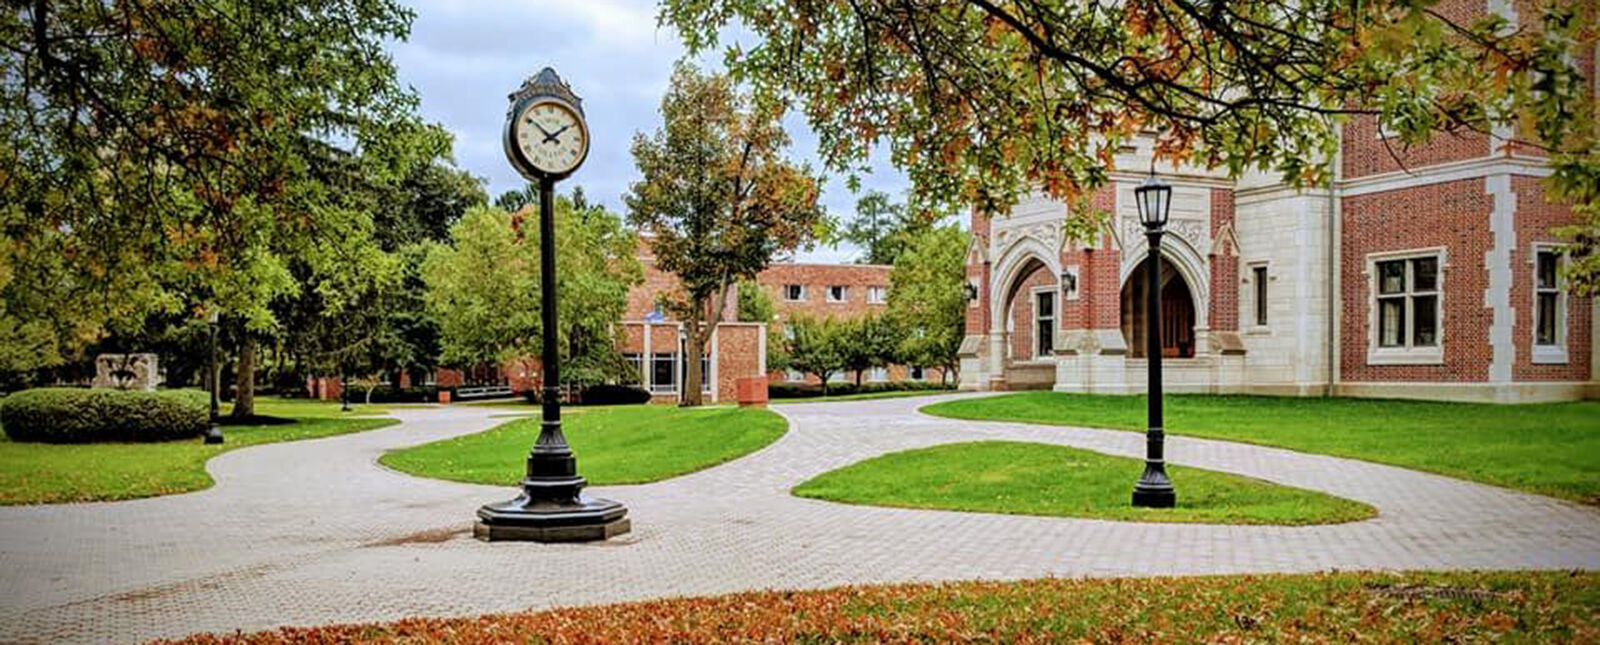 一座钟矗立在迈尔大厅附近的校园走道中央，地上铺着彩色的树叶